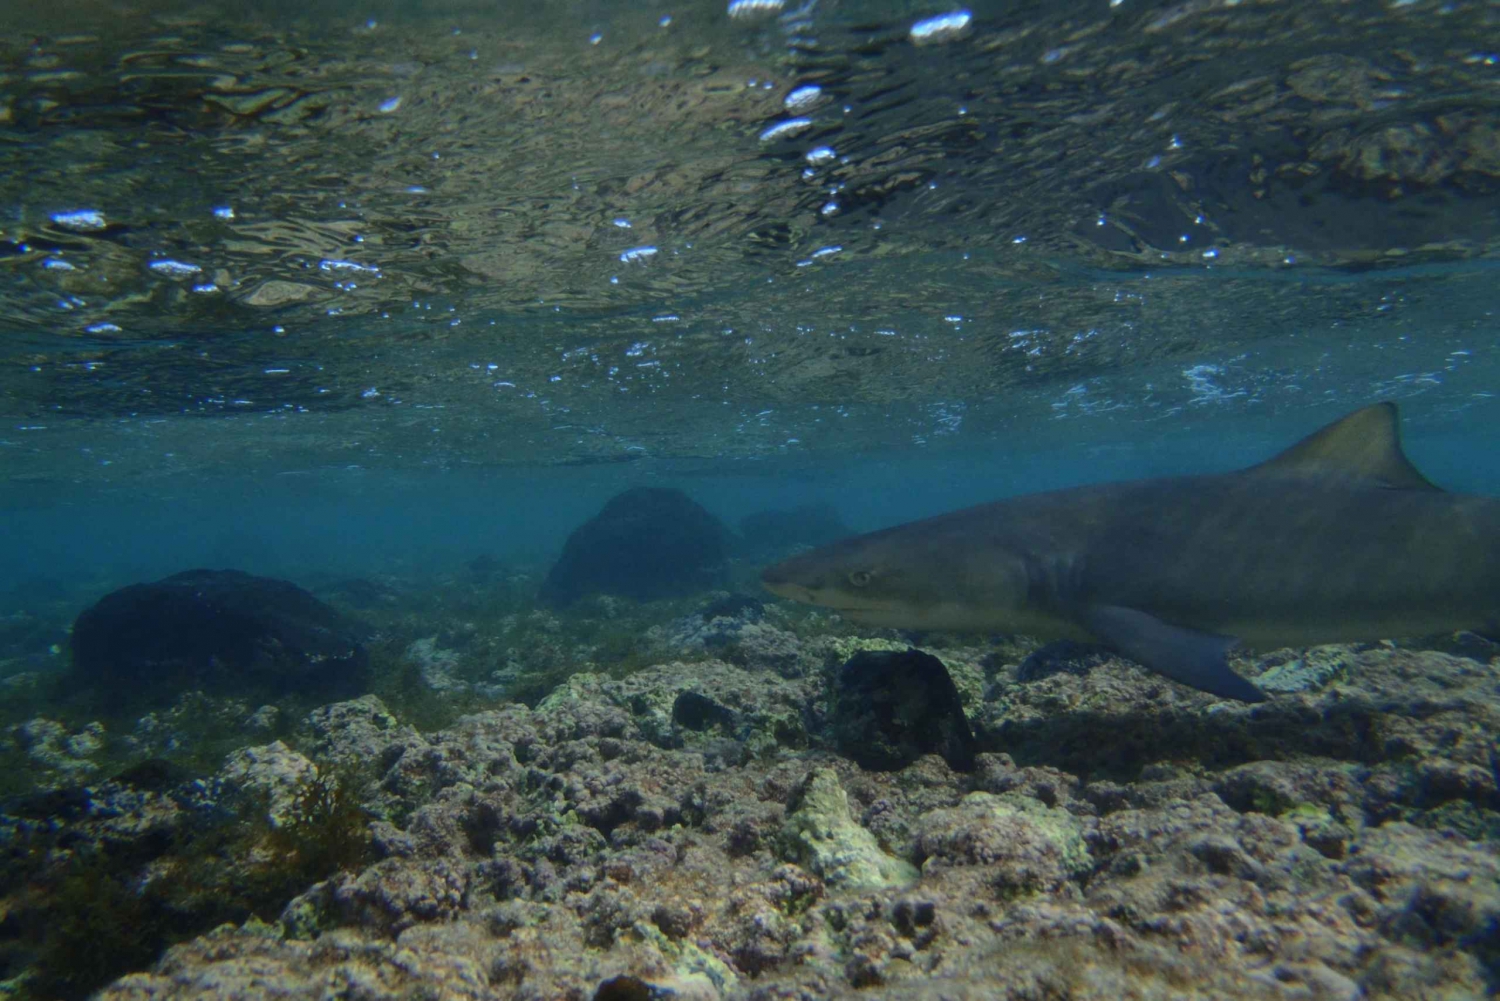 Ab Santa Maria: Zitronenhaie beobachten bei geführter Tour